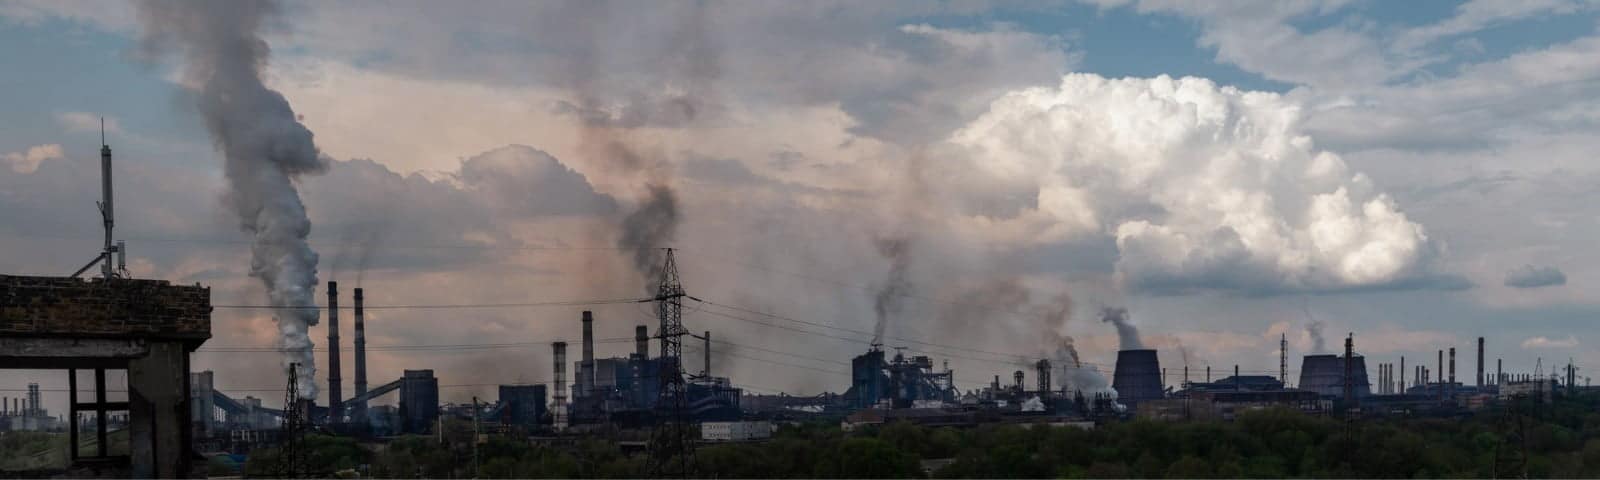 smog nad terenem przemysłowym